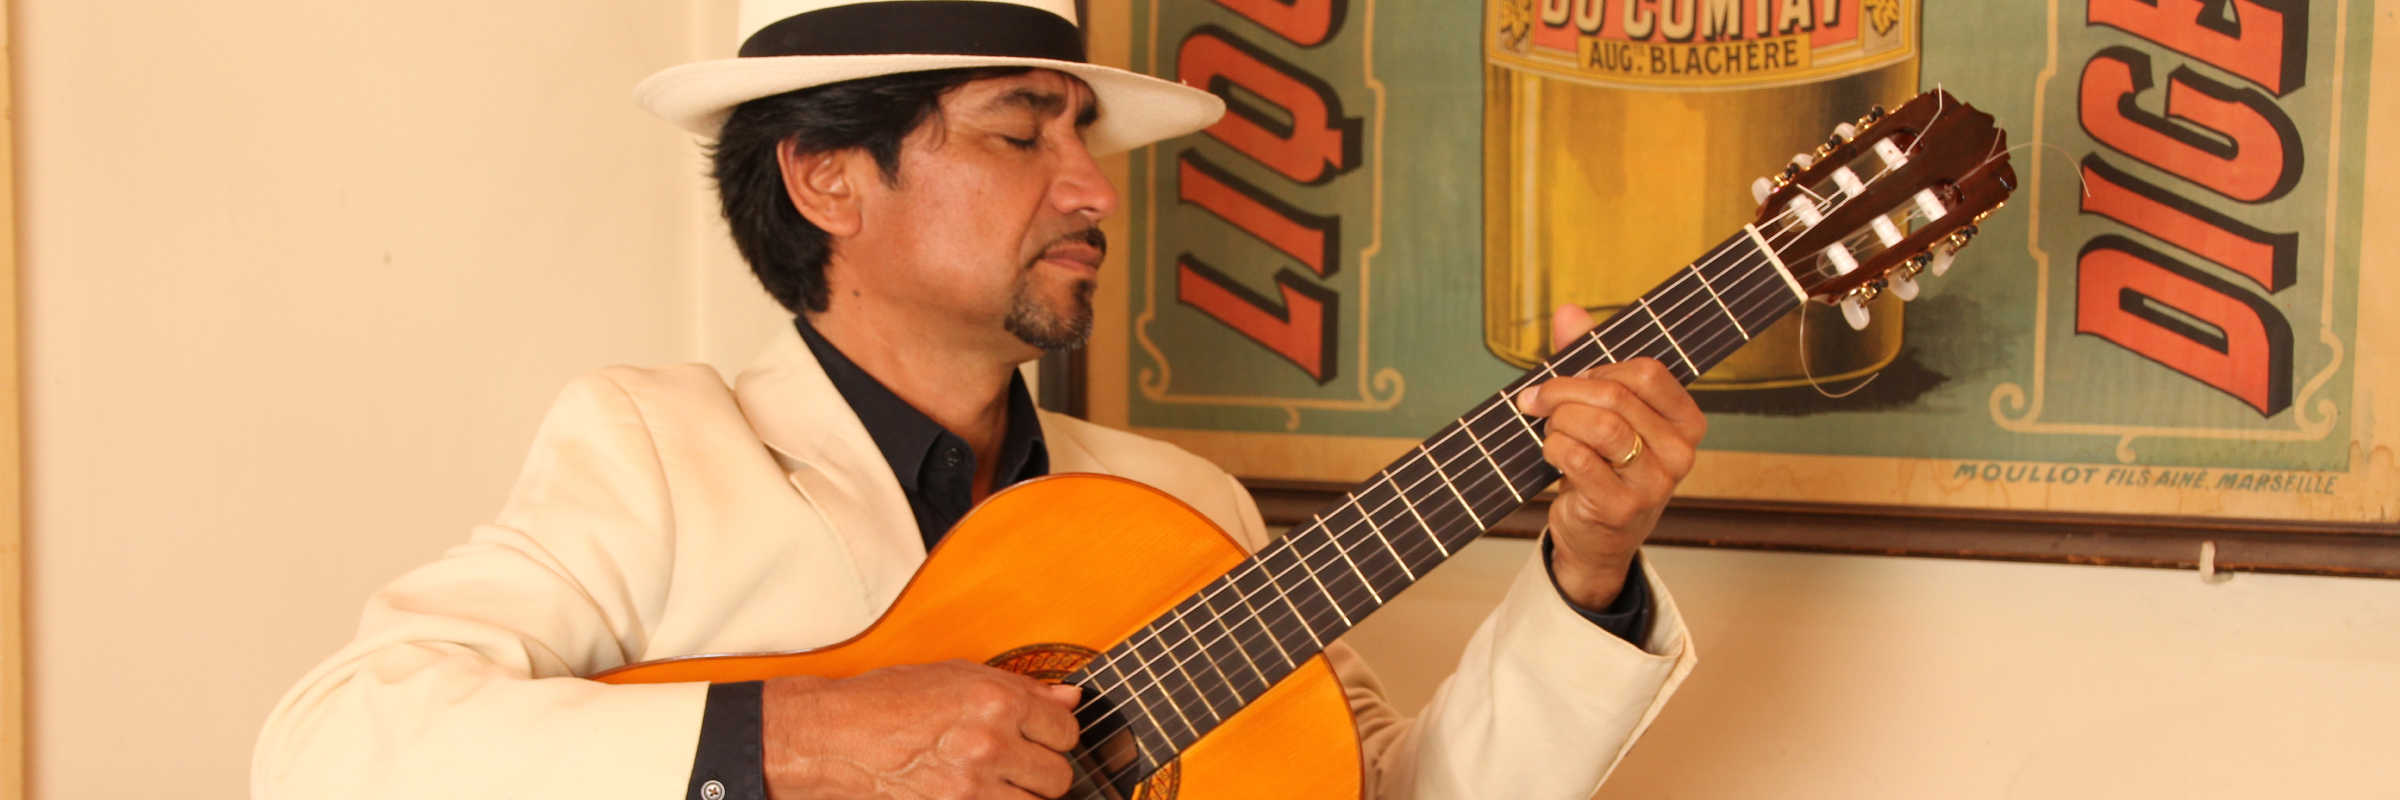 Joselo Gonzalez, musicien Latino en représentation à Vaucluse - photo de couverture